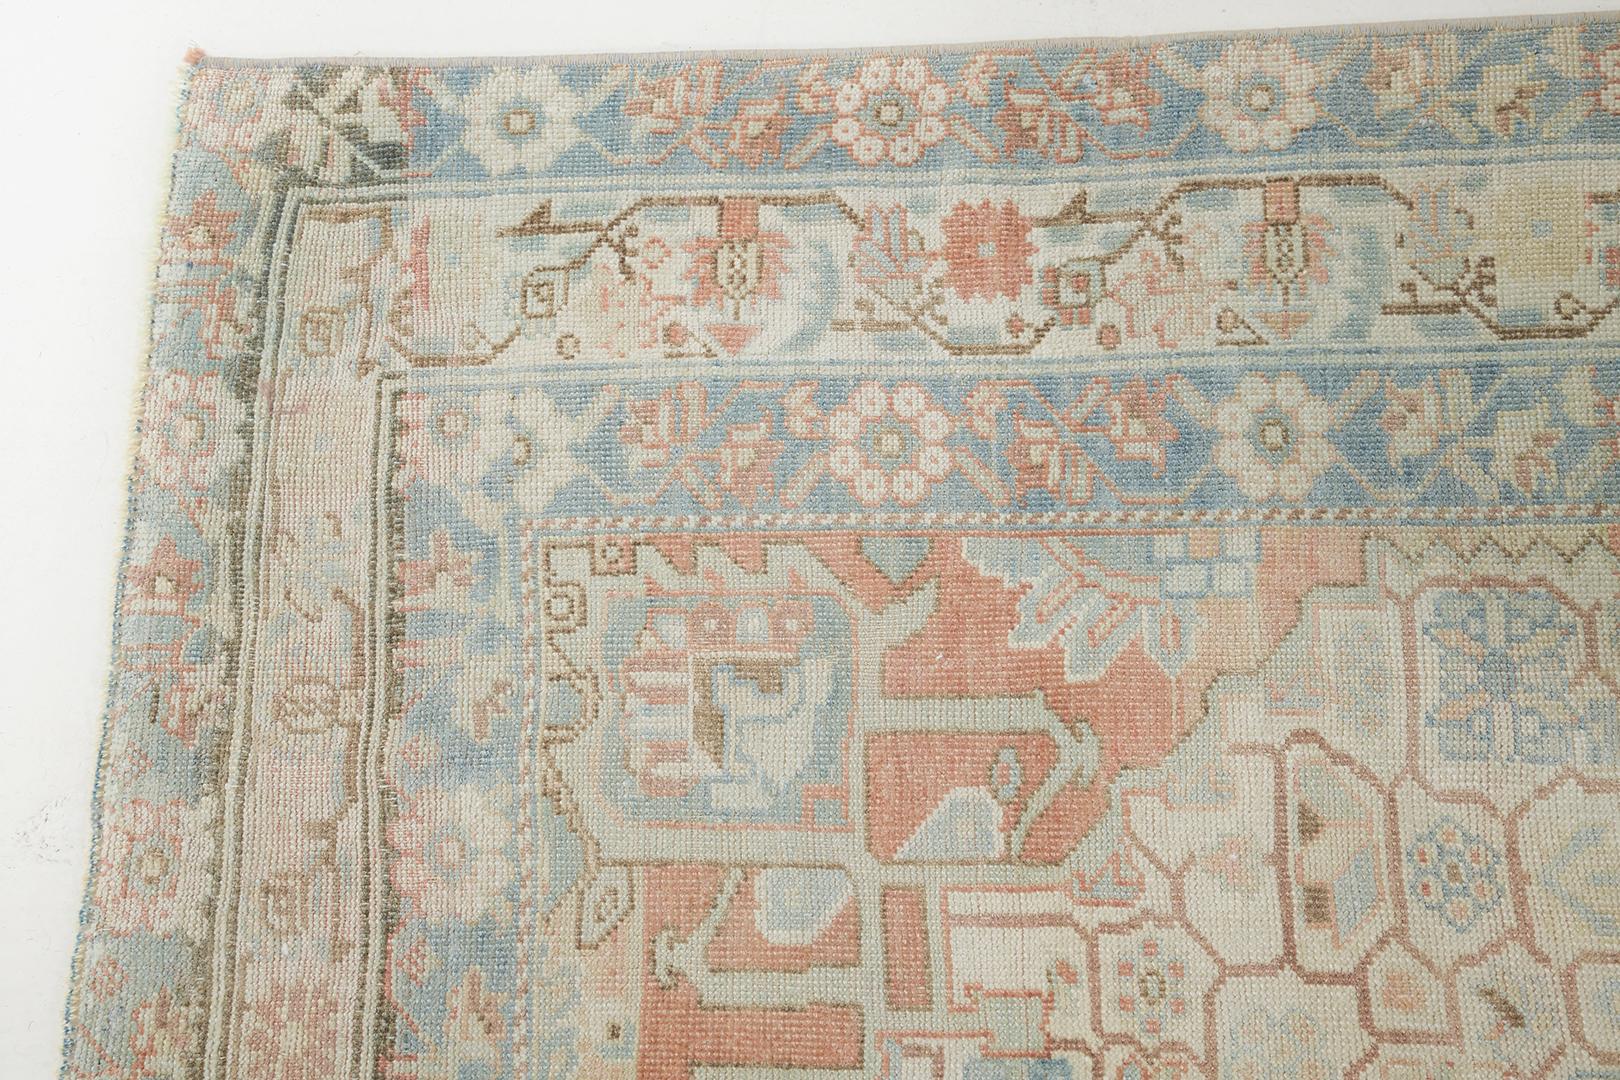 Un séduisant tapis persan ancien Afshar qui présente une étonnante palette de couleurs sourdes de bleu océan et de rouille. Elegamment composé et mettant en valeur un captivant design botanique all-over, ce tapis sophistiqué présente un effet